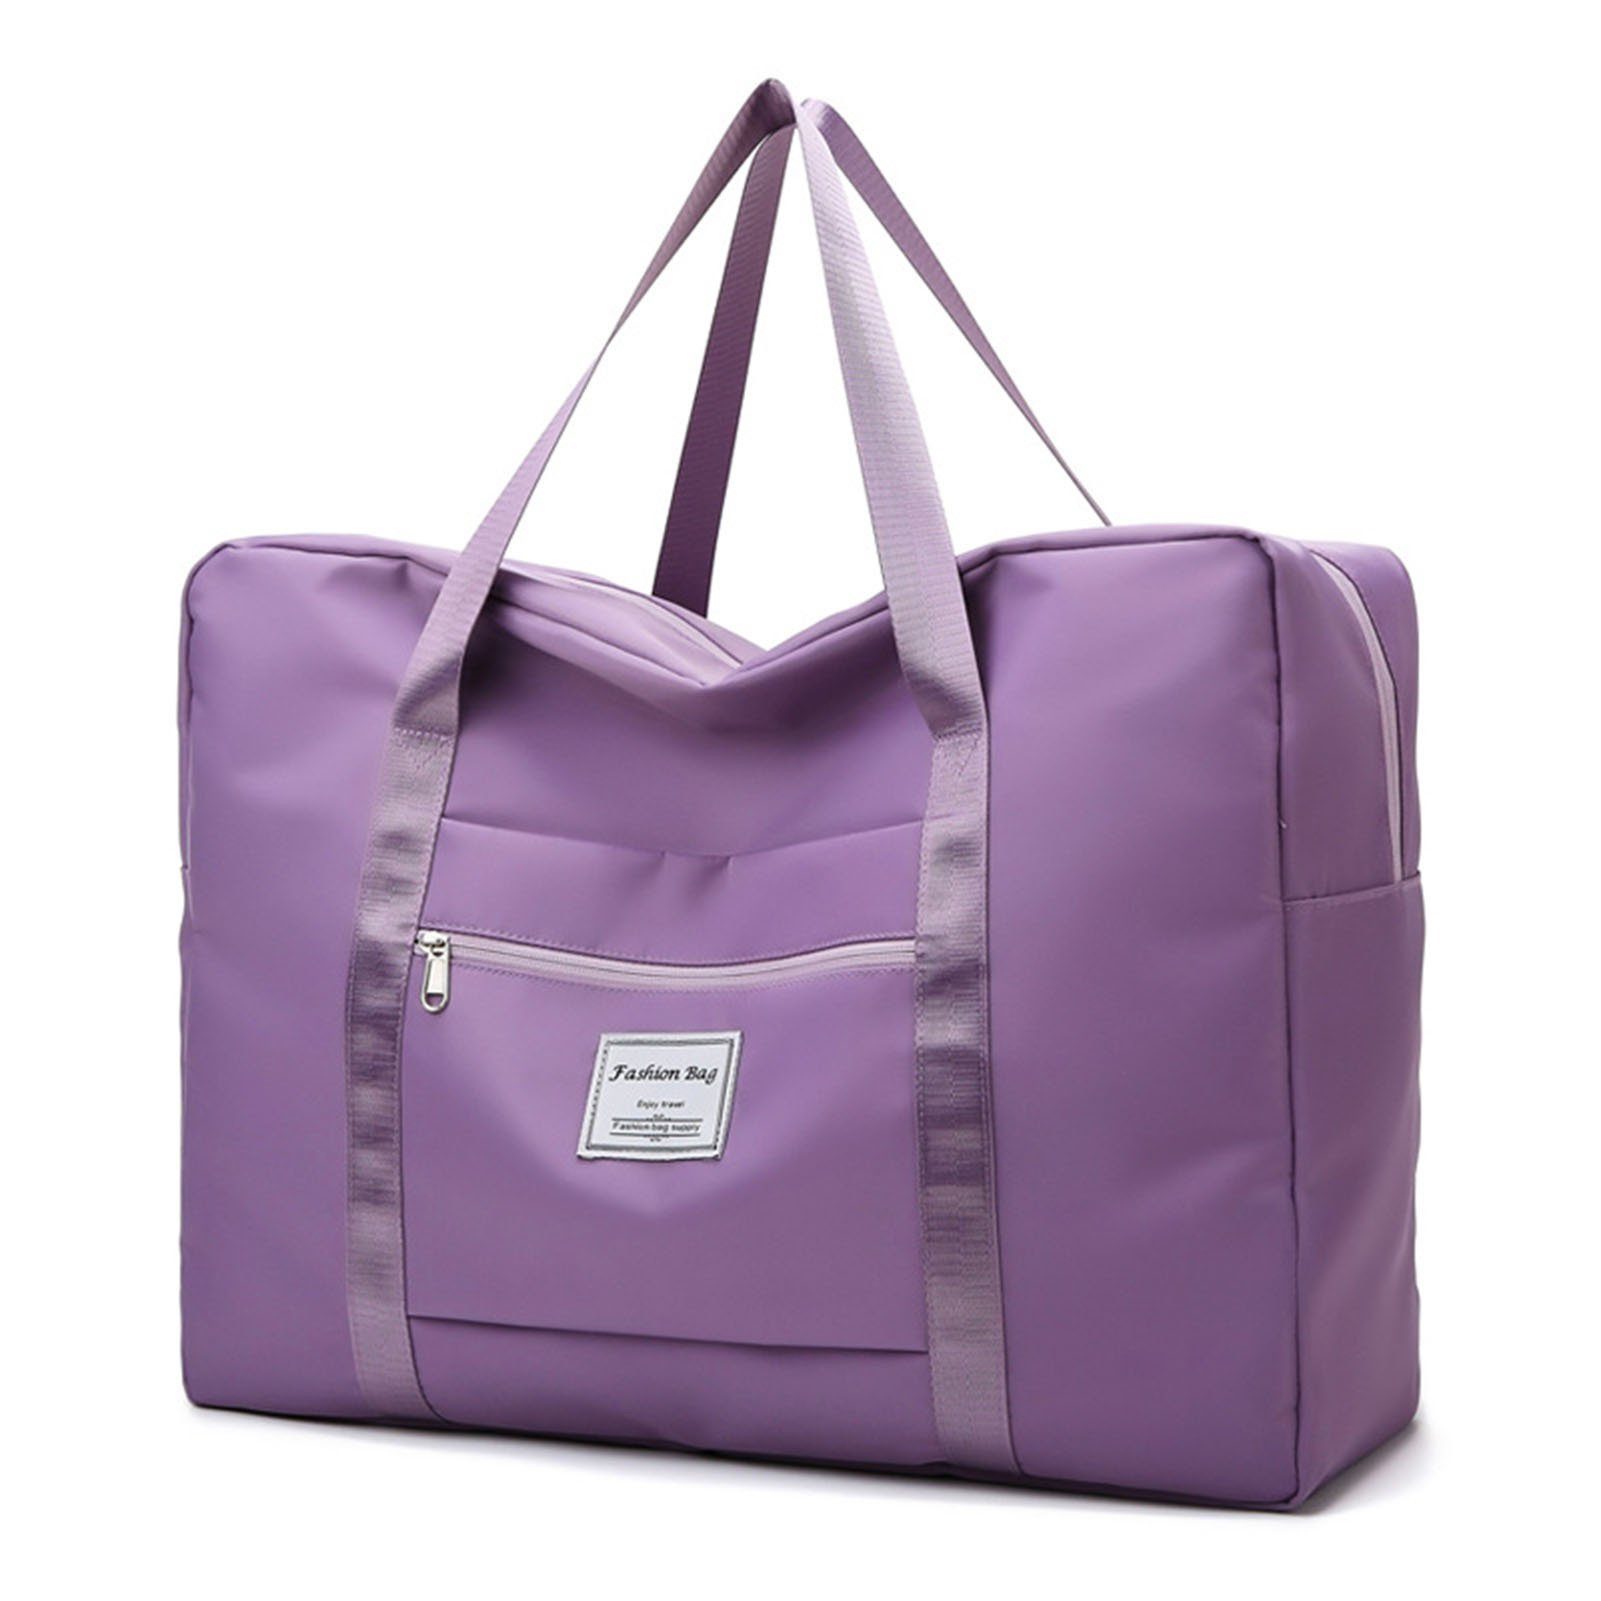 Blusmart Sporttasche Einfarbige, Große Sporttasche Mit Reißverschluss, Große Kapazität purple